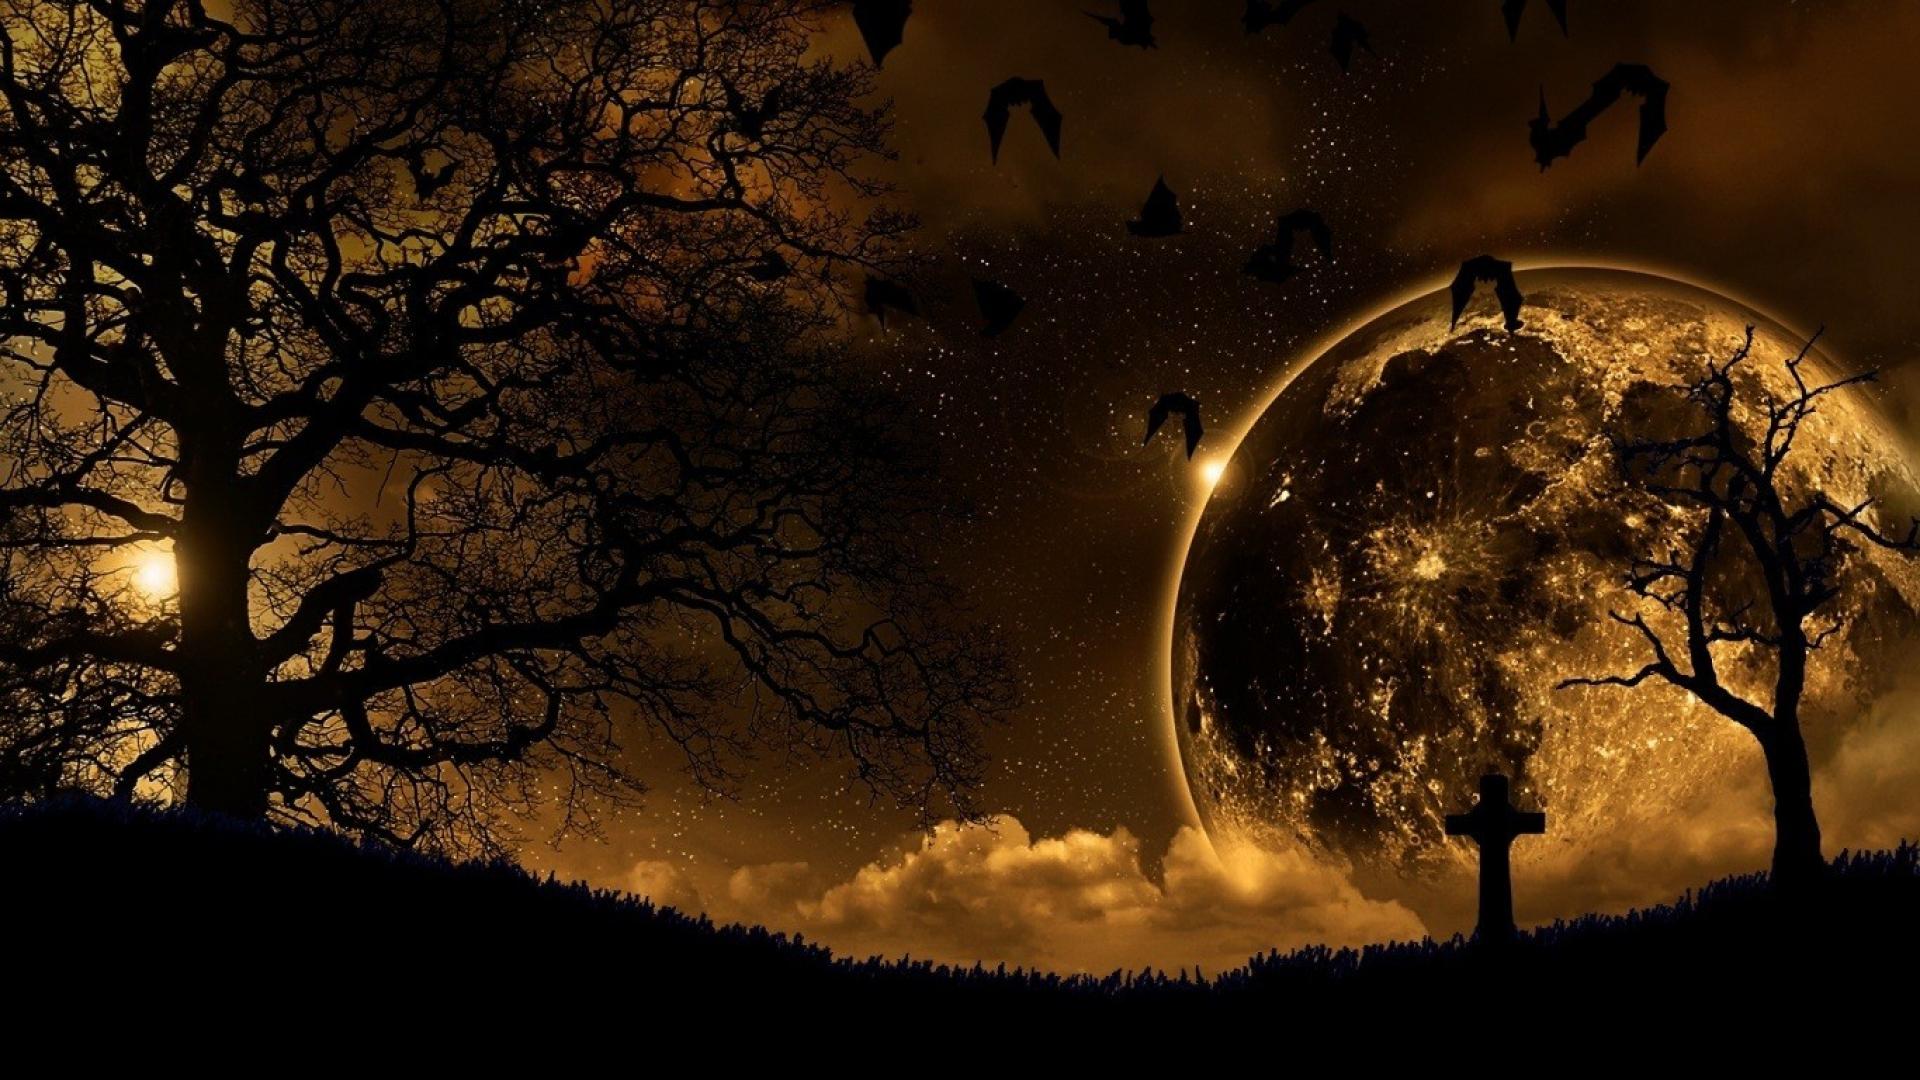 Gothic Moonlit Night HD Wallpaper | Hintergrund | 1920x1080 | ID:312304